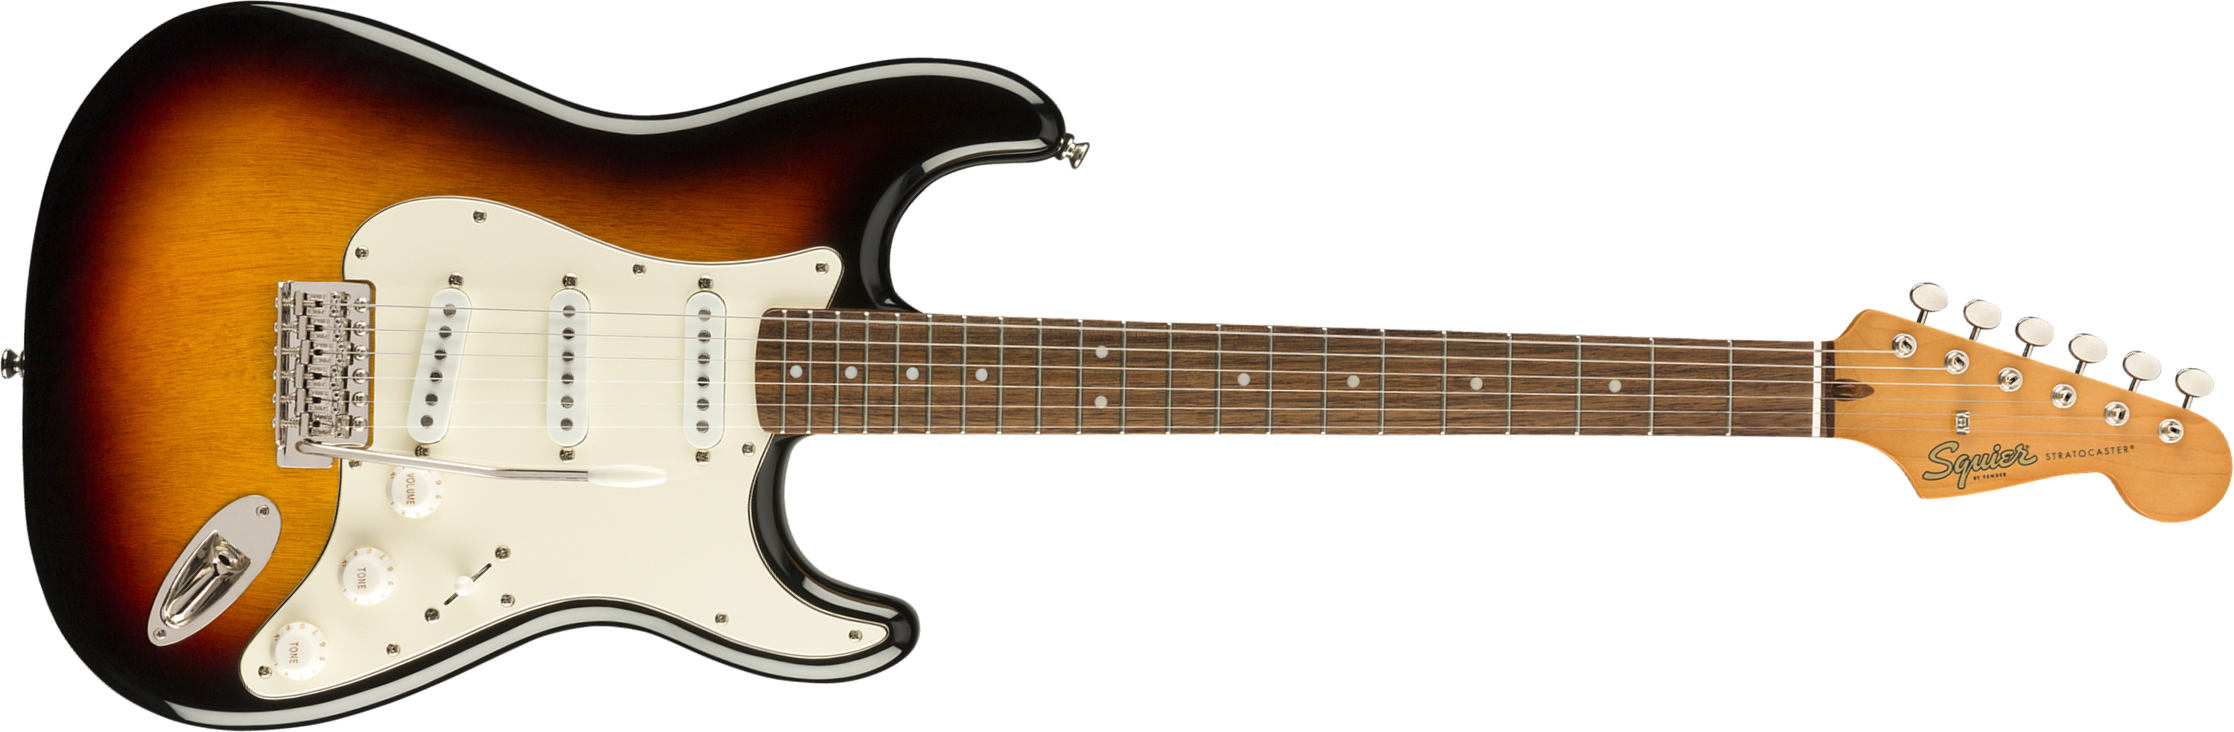 Squier Strat '60s Classic Vibe 2019 Lau 2019 - 3-color Sunburst - Str shape electric guitar - Main picture